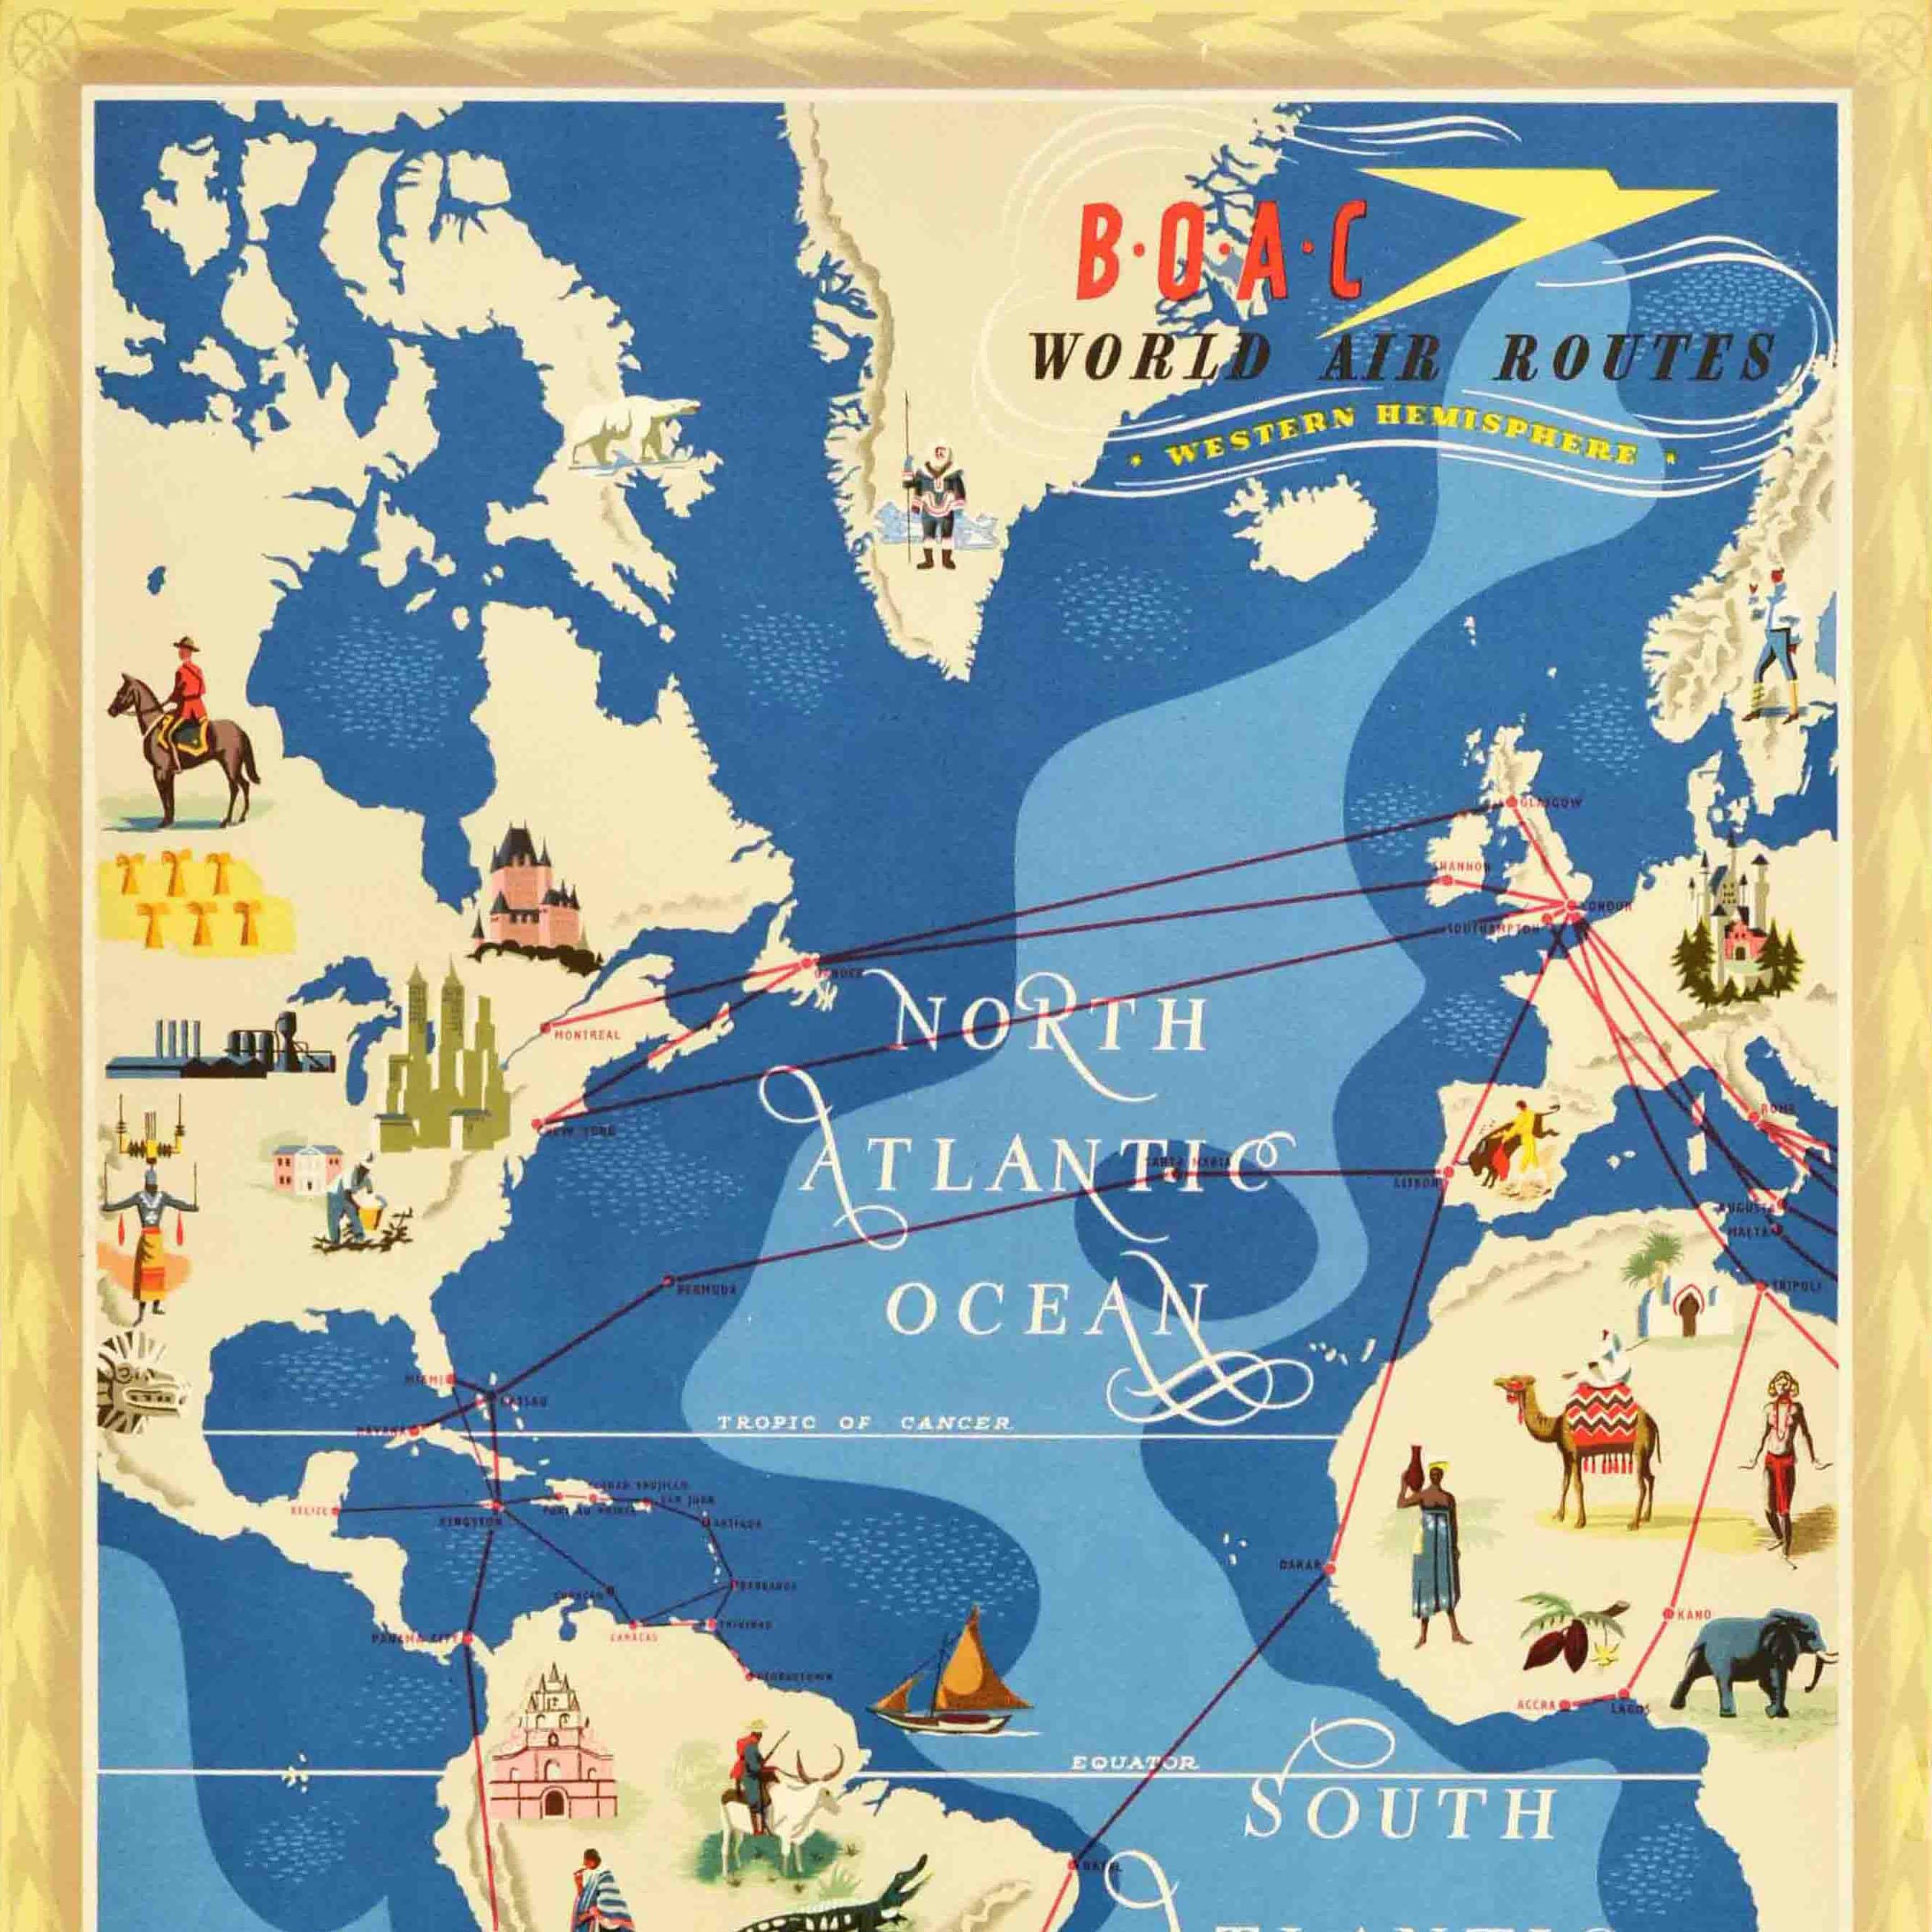 Original-Vintage-Reiseplakat BOAC World Air Routes, Western Hemisphere Design (Blau), Print, von Unknown